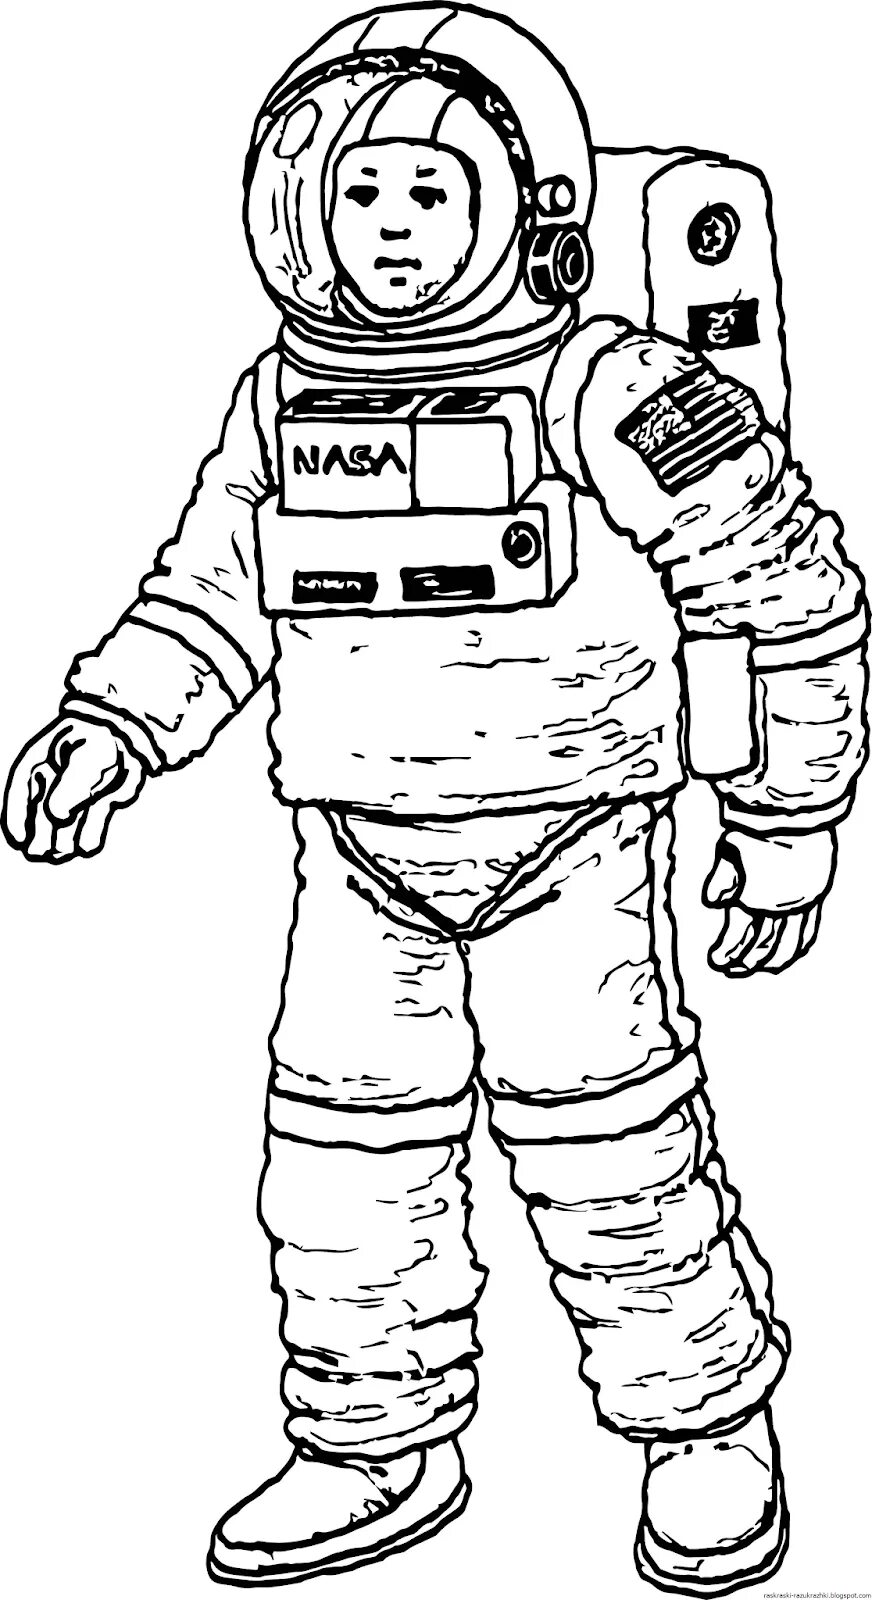 Космонавт раскраска для детей. Раскраска про космос и Космонавтов для детей. Космонавт рисунок. Рисунок Космонавта в скафандре для детей. Как нарисовать скафандр